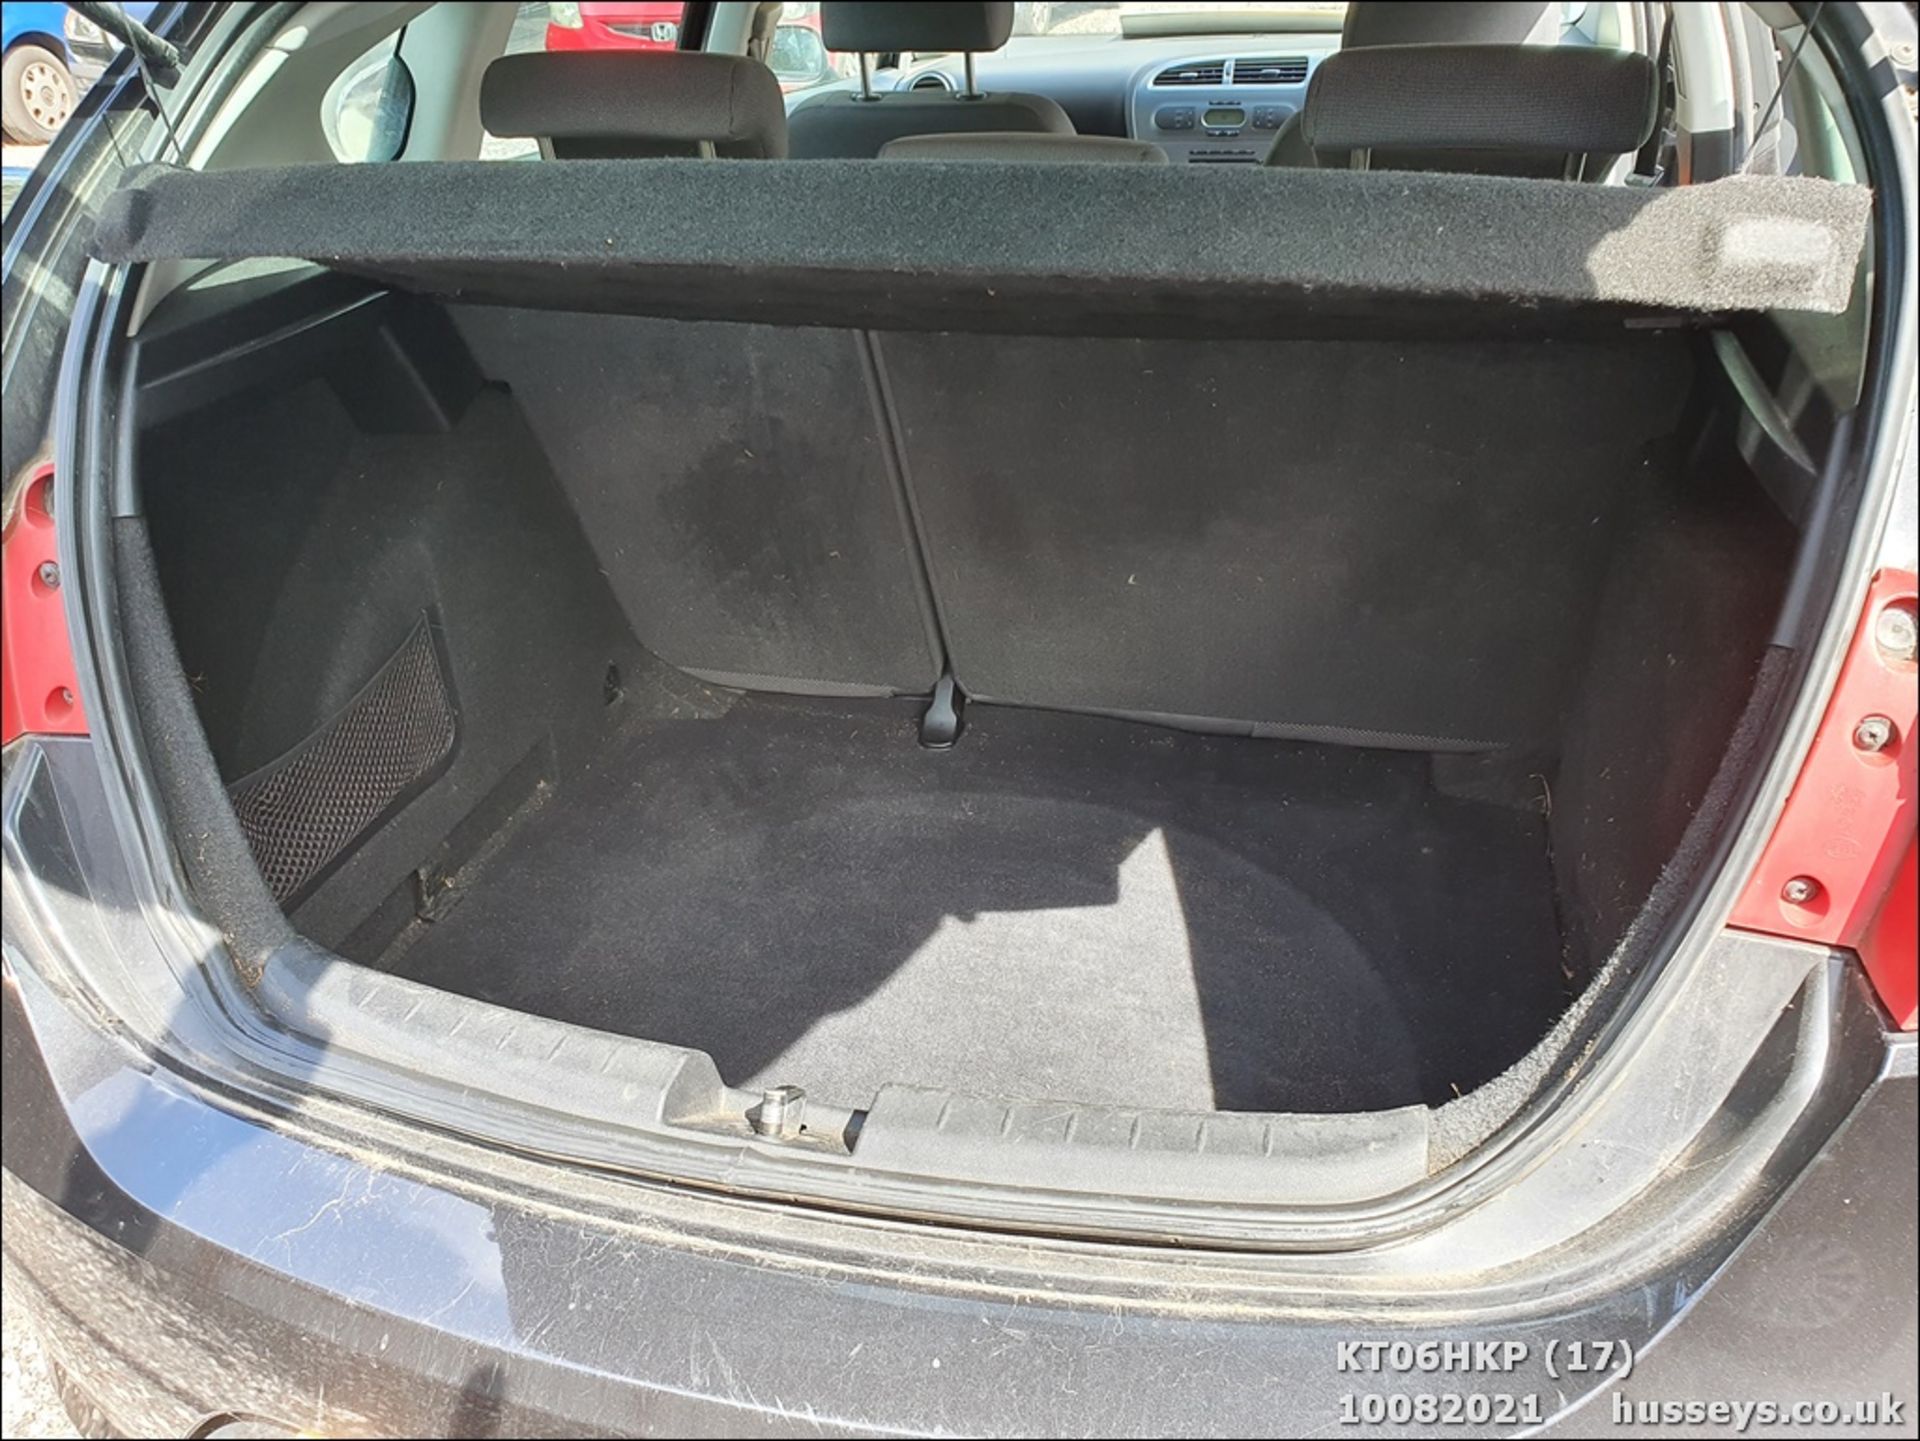 06/06 SEAT LEON STYLANCE - 1595cc 5dr Hatchback (Black, 142k) - Image 17 of 18